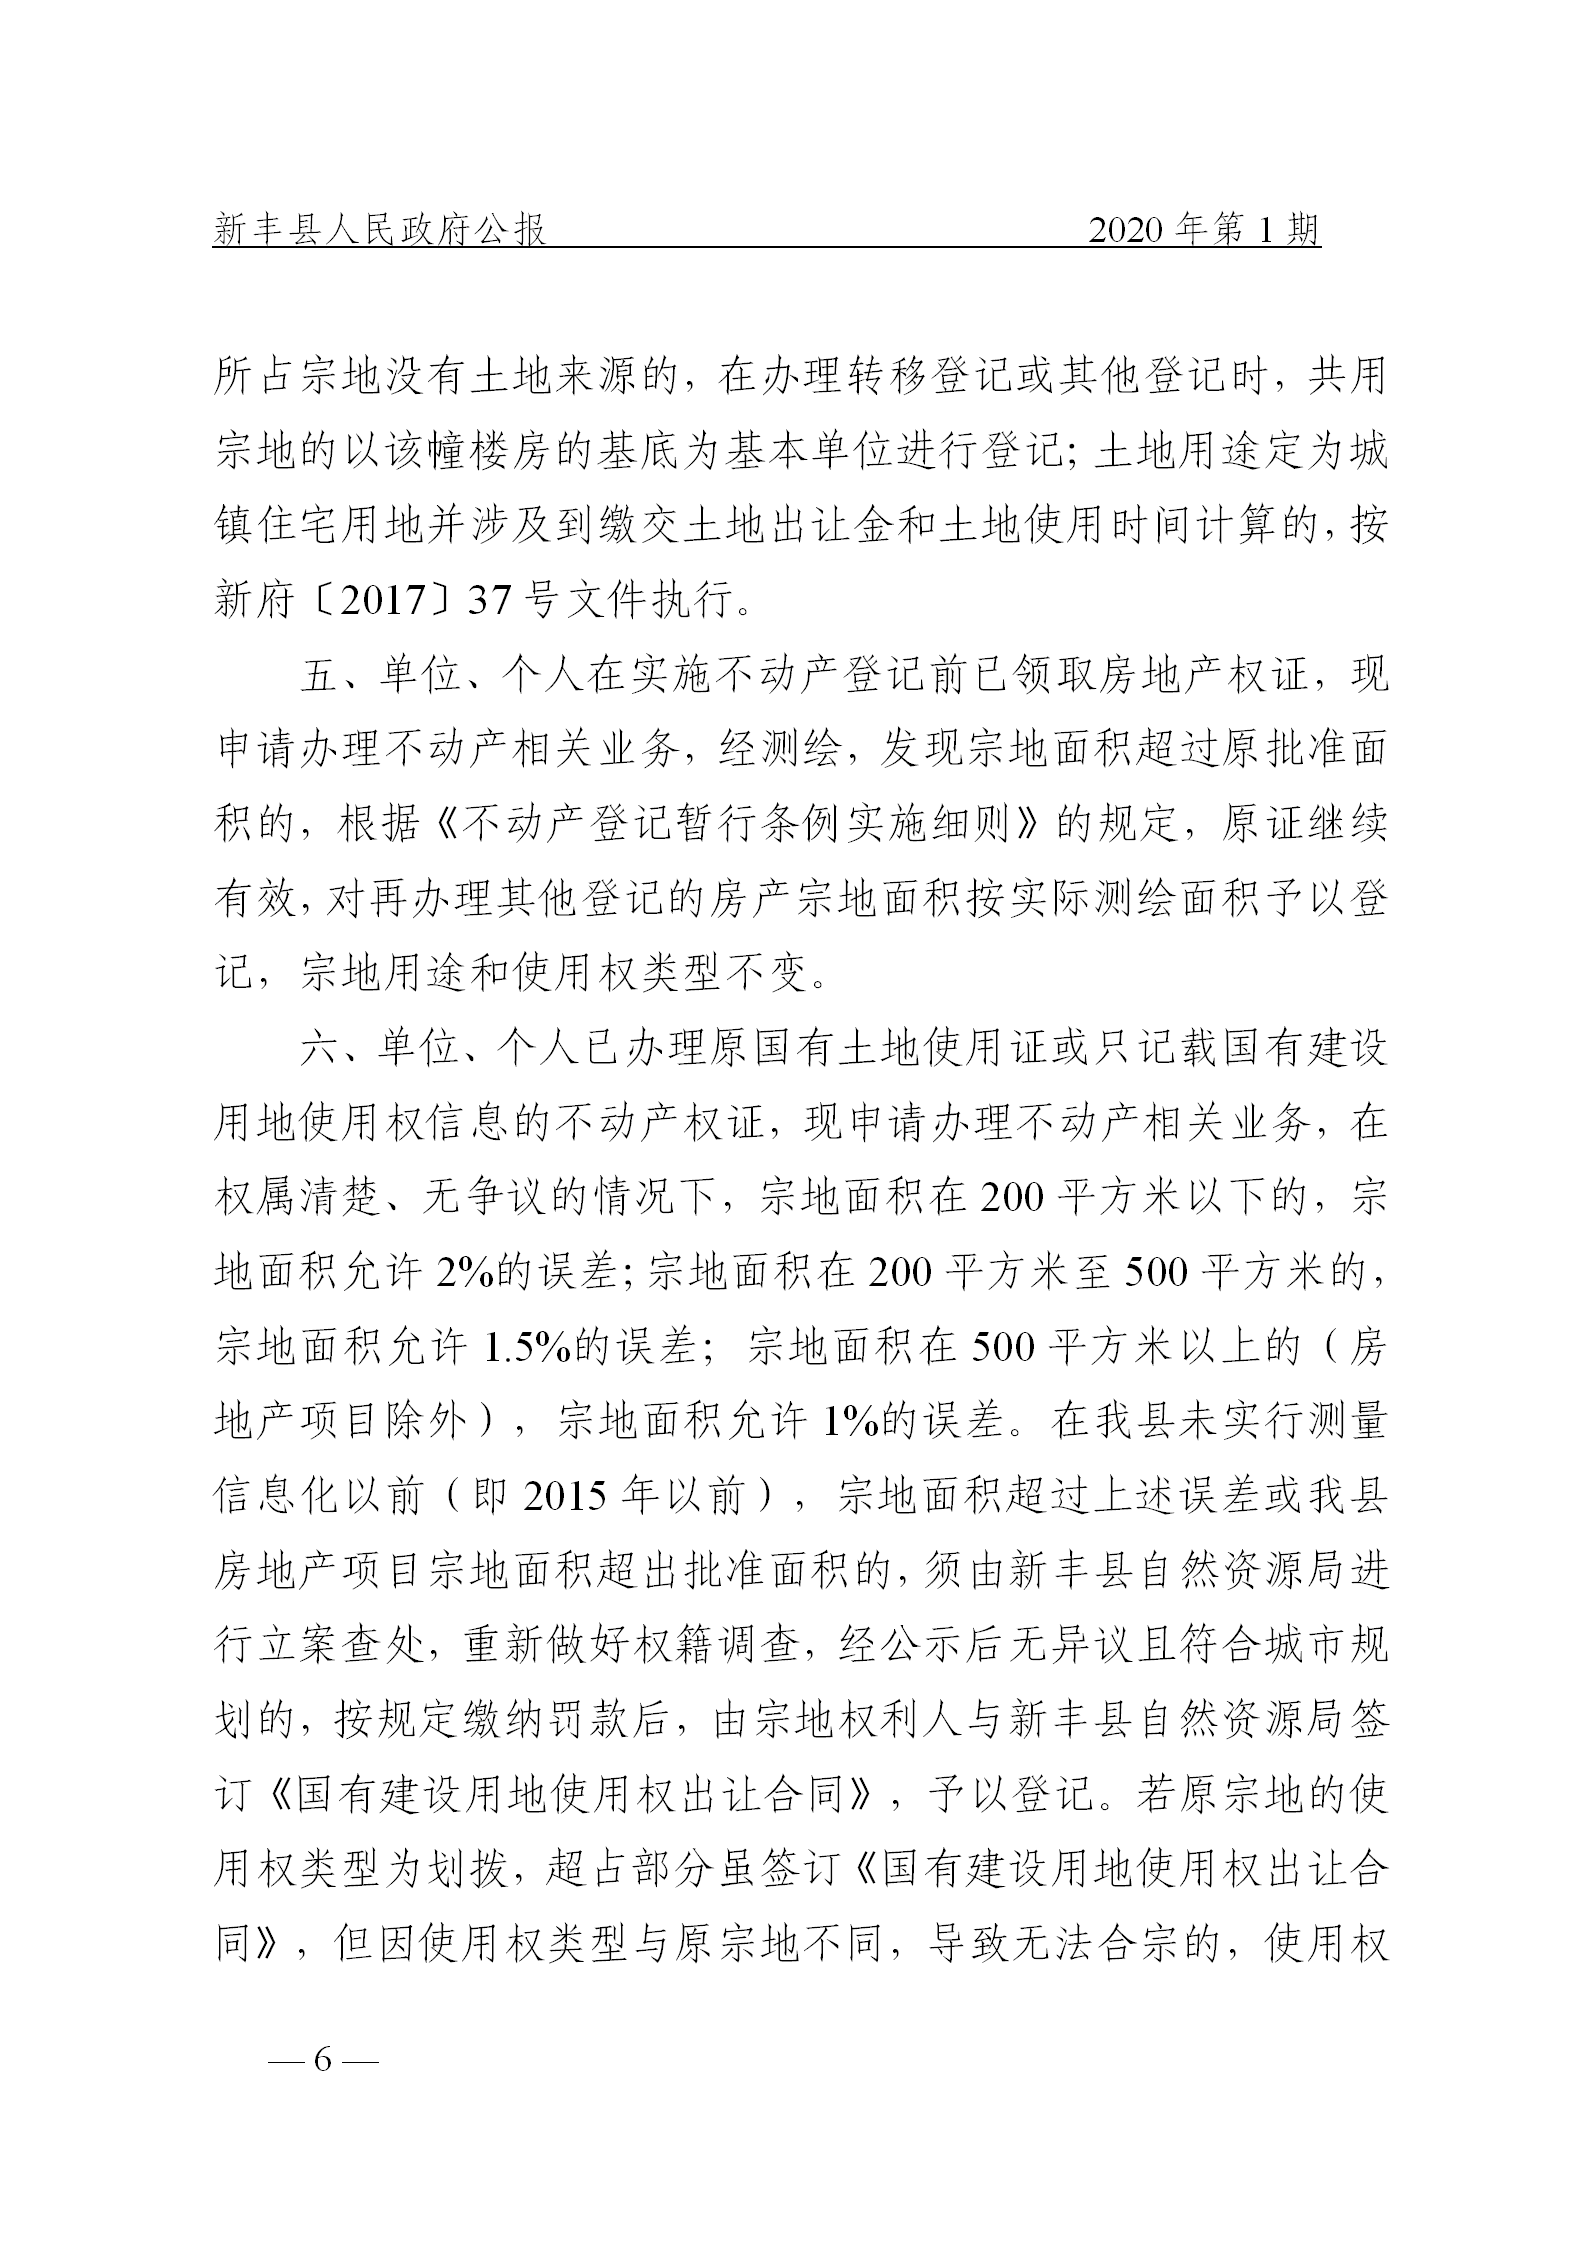 《新丰县人民政府公报》2020年第1期(1)_06.png